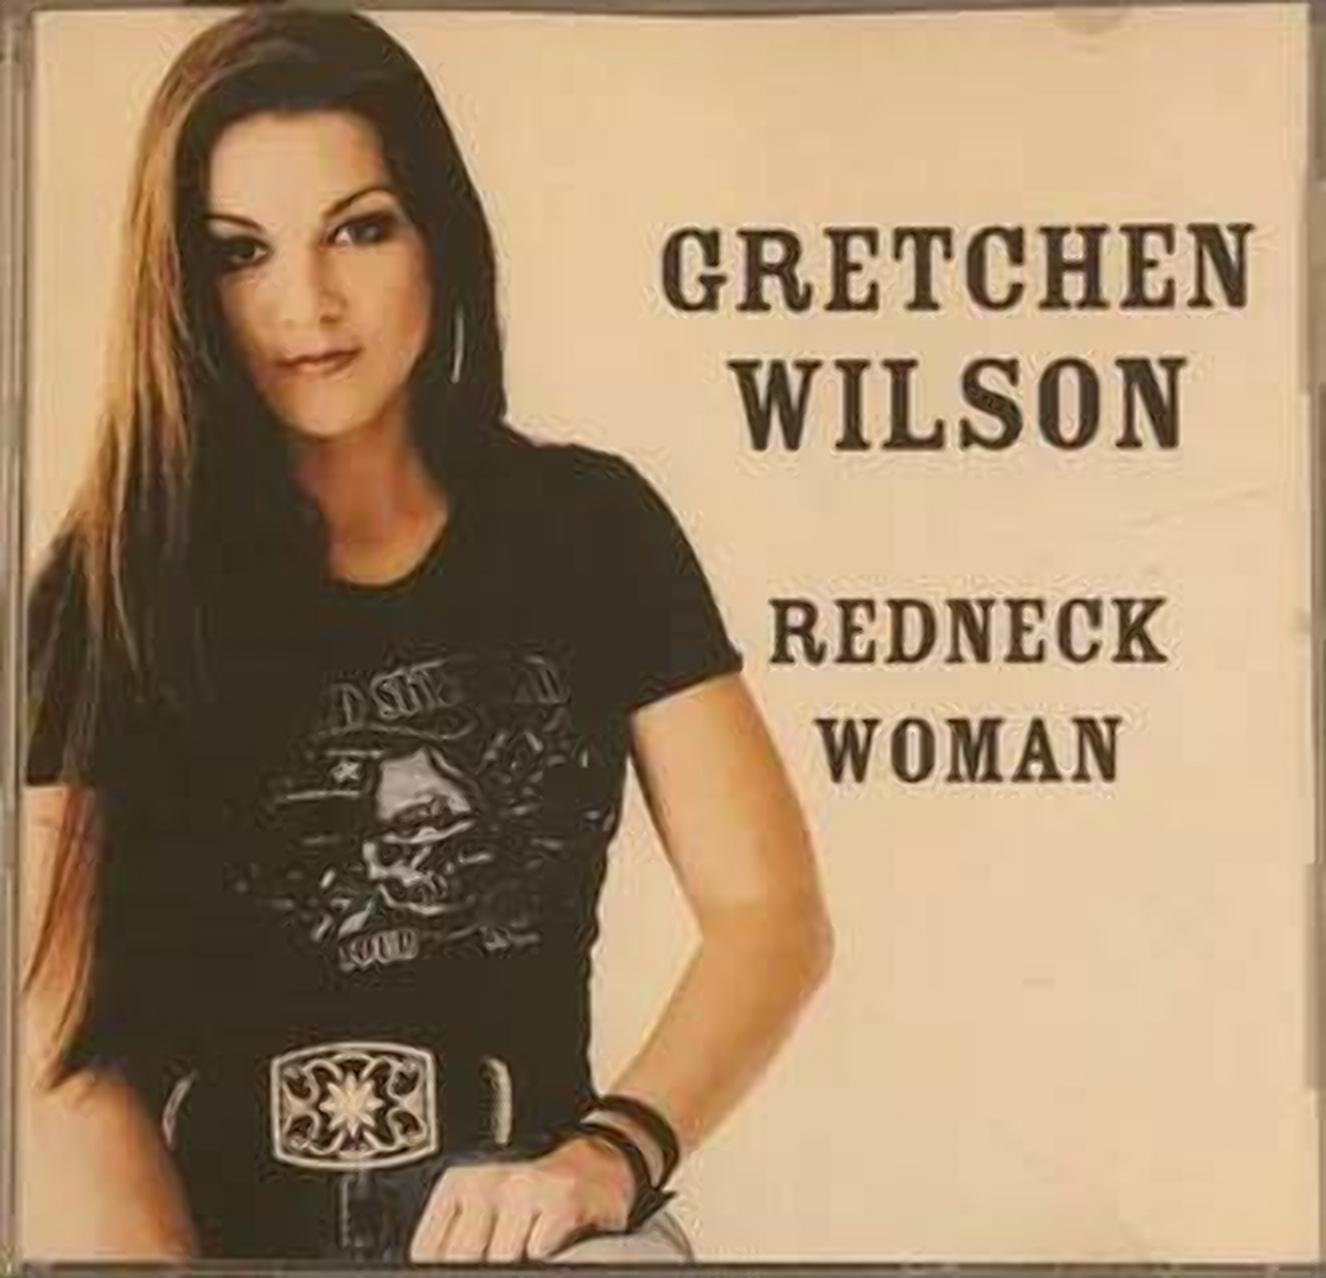 Gretchen wilson height